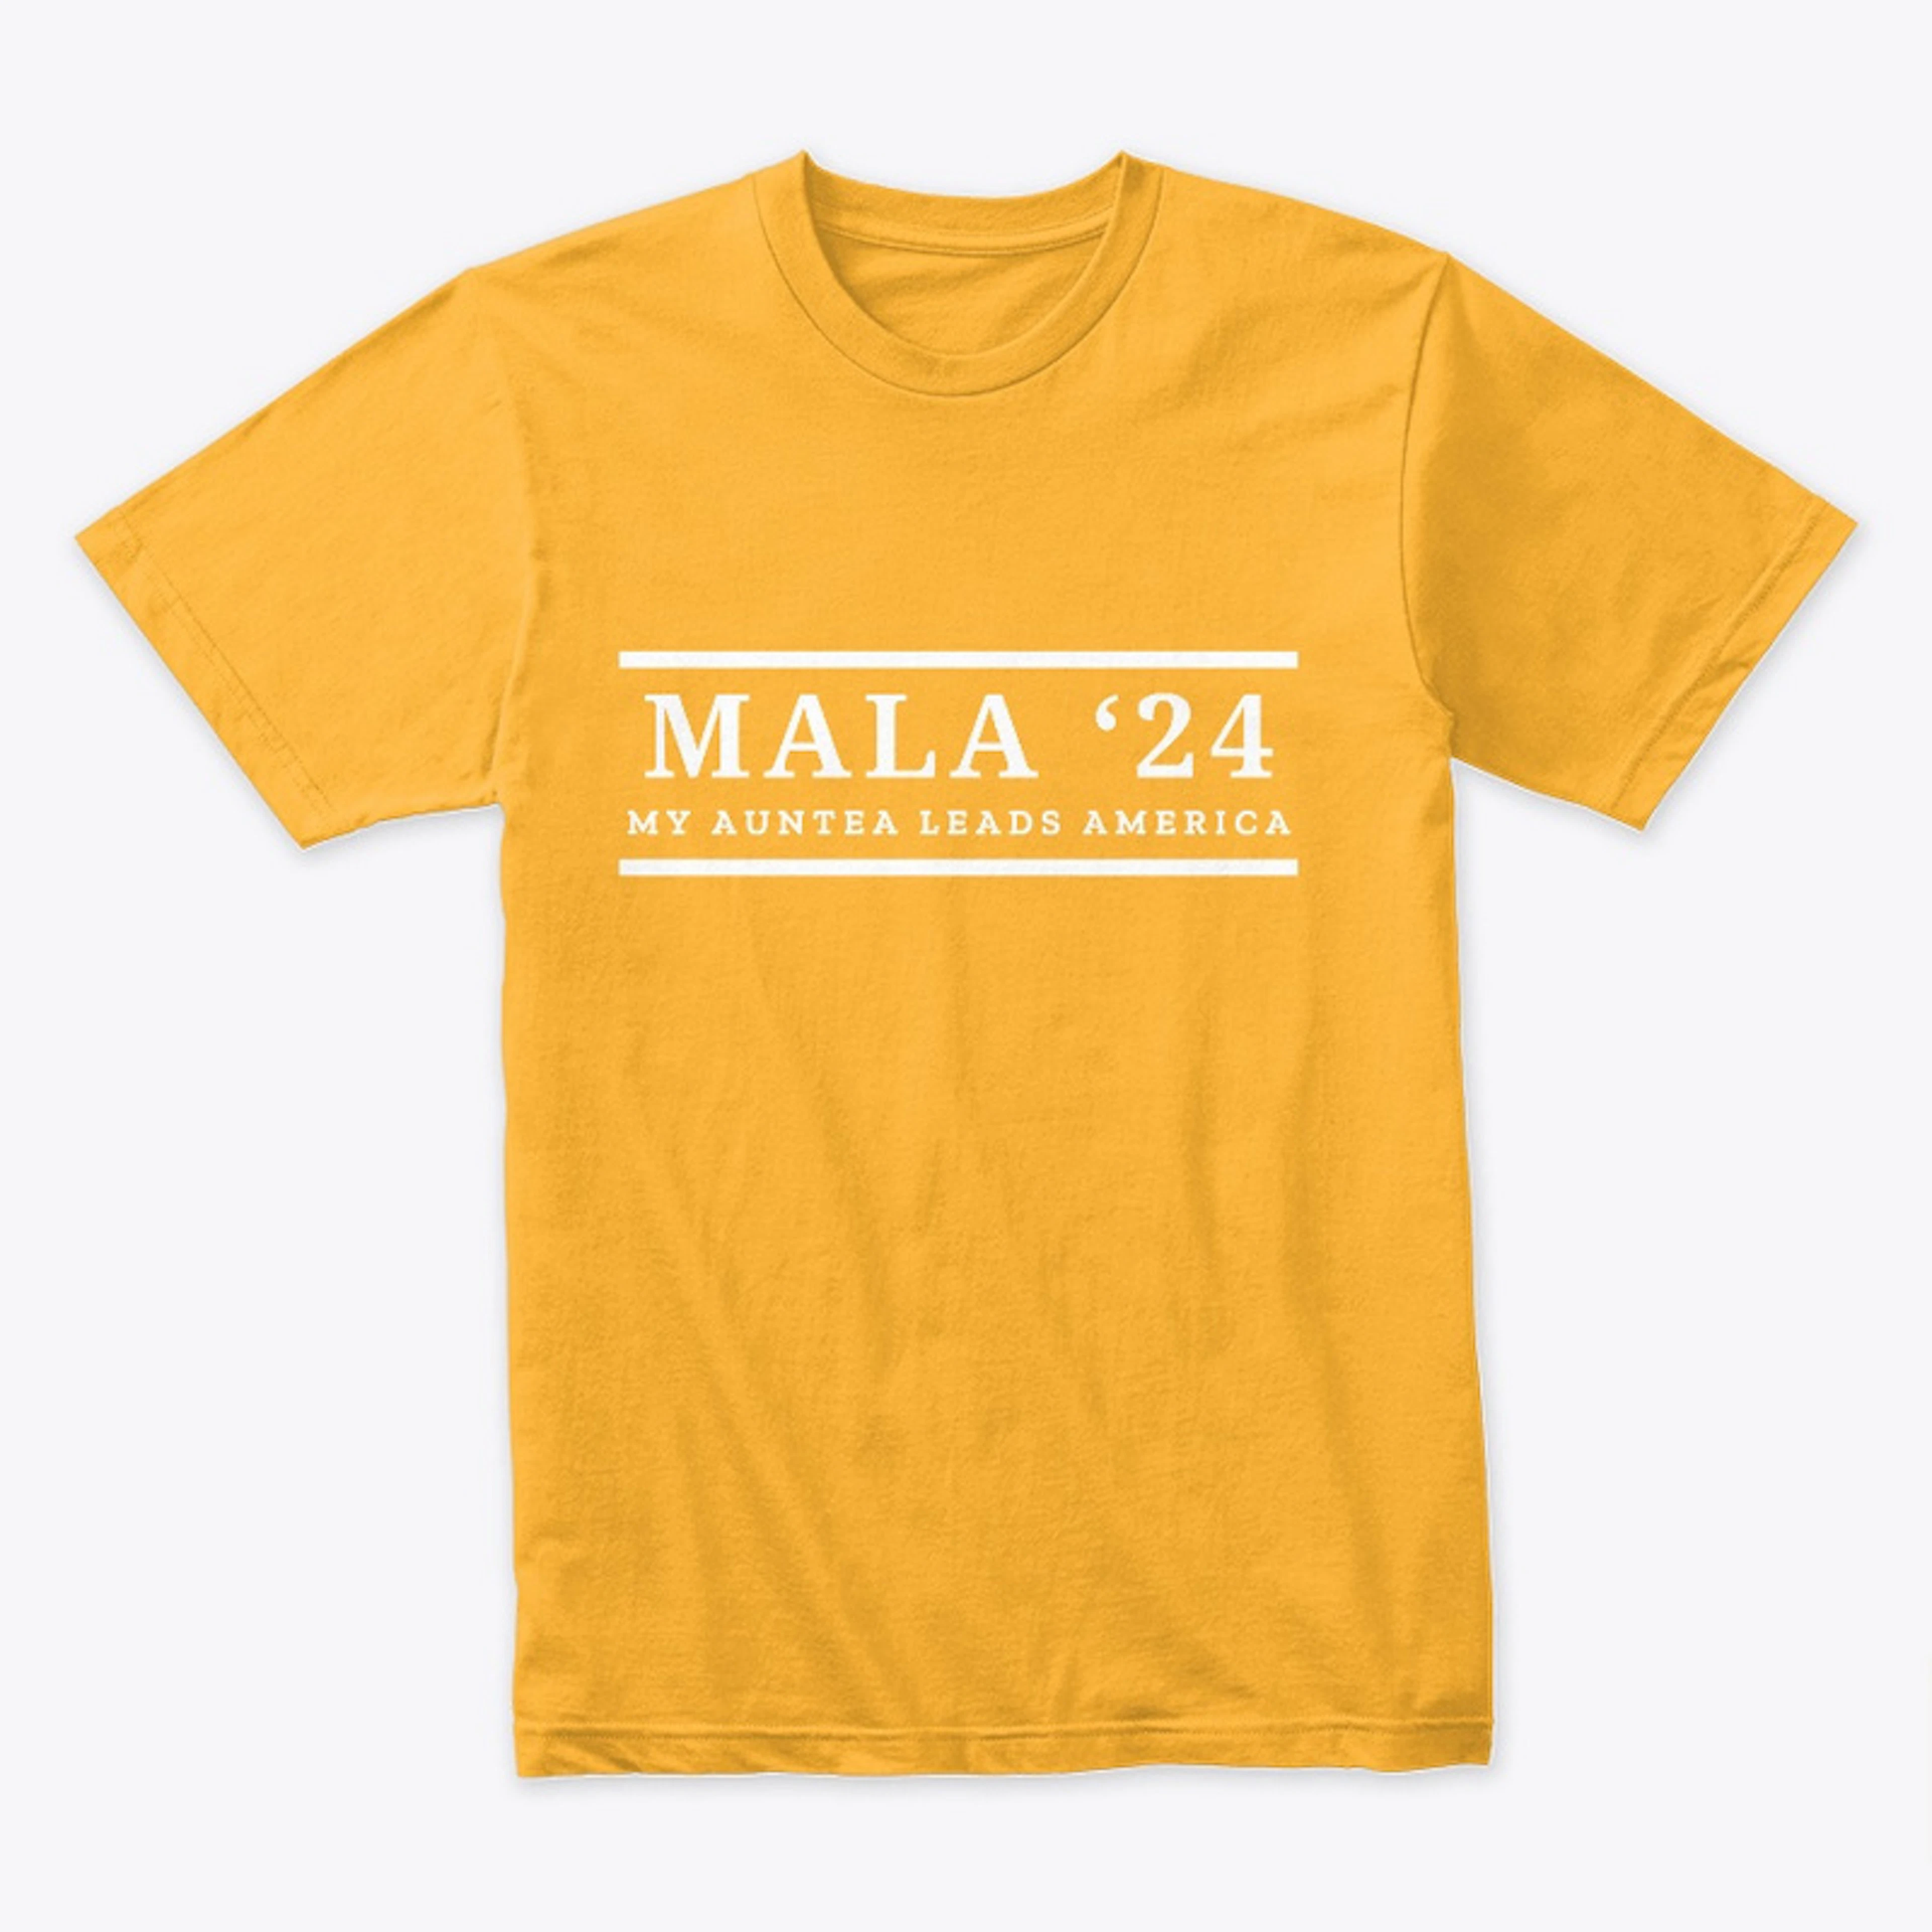 MALA '24